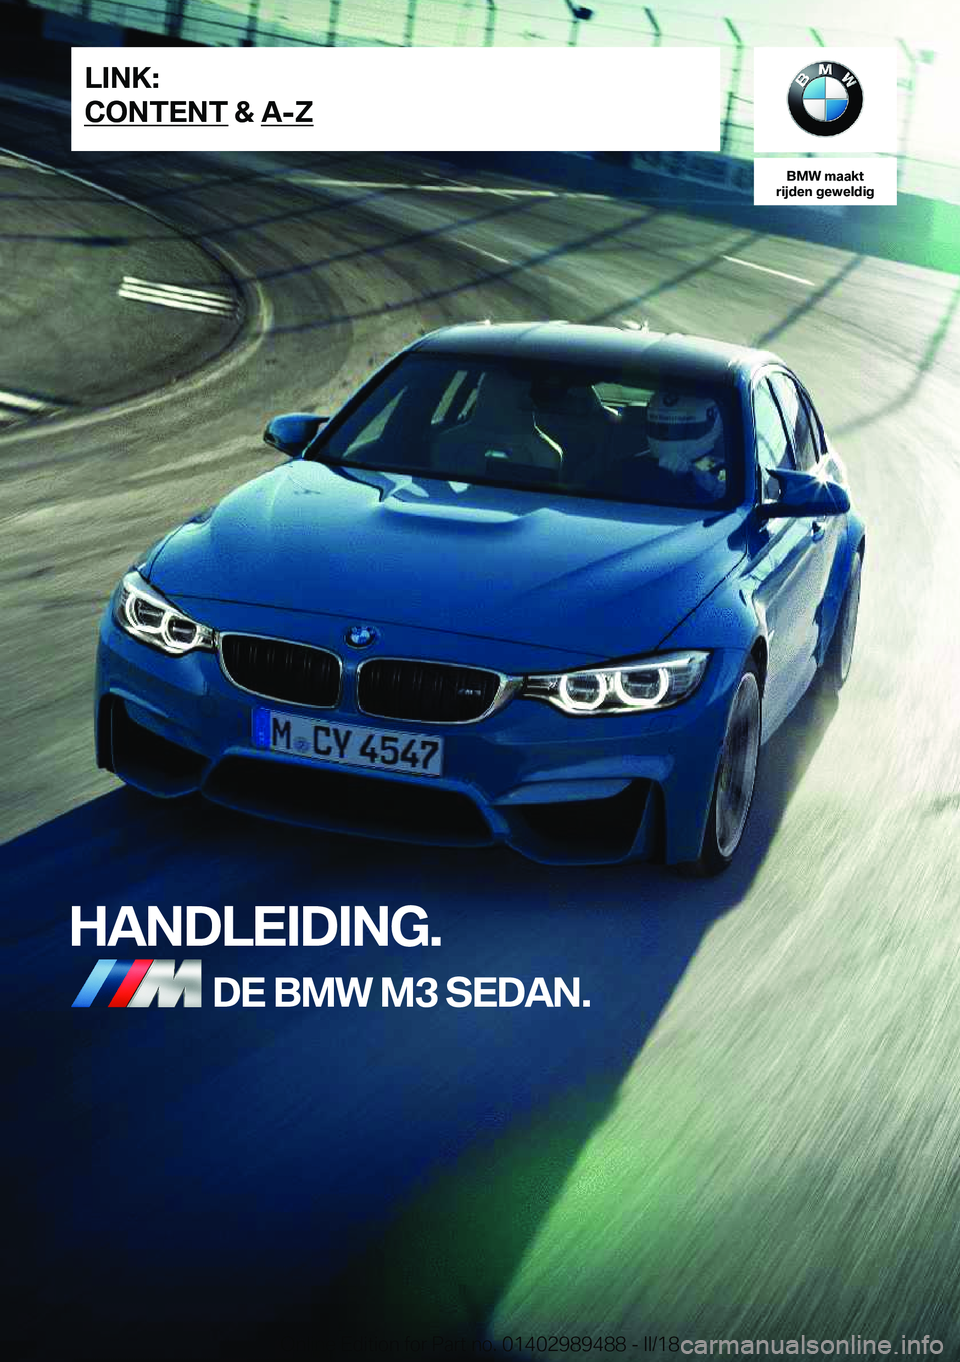 BMW M3 2018  Instructieboekjes (in Dutch) �B�M�W��m�a�a�k�t
�r�i�j�d�e�n��g�e�w�e�l�d�i�g
�H�A�N�D�L�E�I�D�I�N�G�.�D�E��B�M�W��M�3��S�E�D�A�N�.�L�I�N�K�:
�C�O�N�T�E�N�T��&��A�-�;�O�n�l�i�n�e� �E�d�i�t�i�o�n� �f�o�r� �P�a�r�t� �n�o�.� �